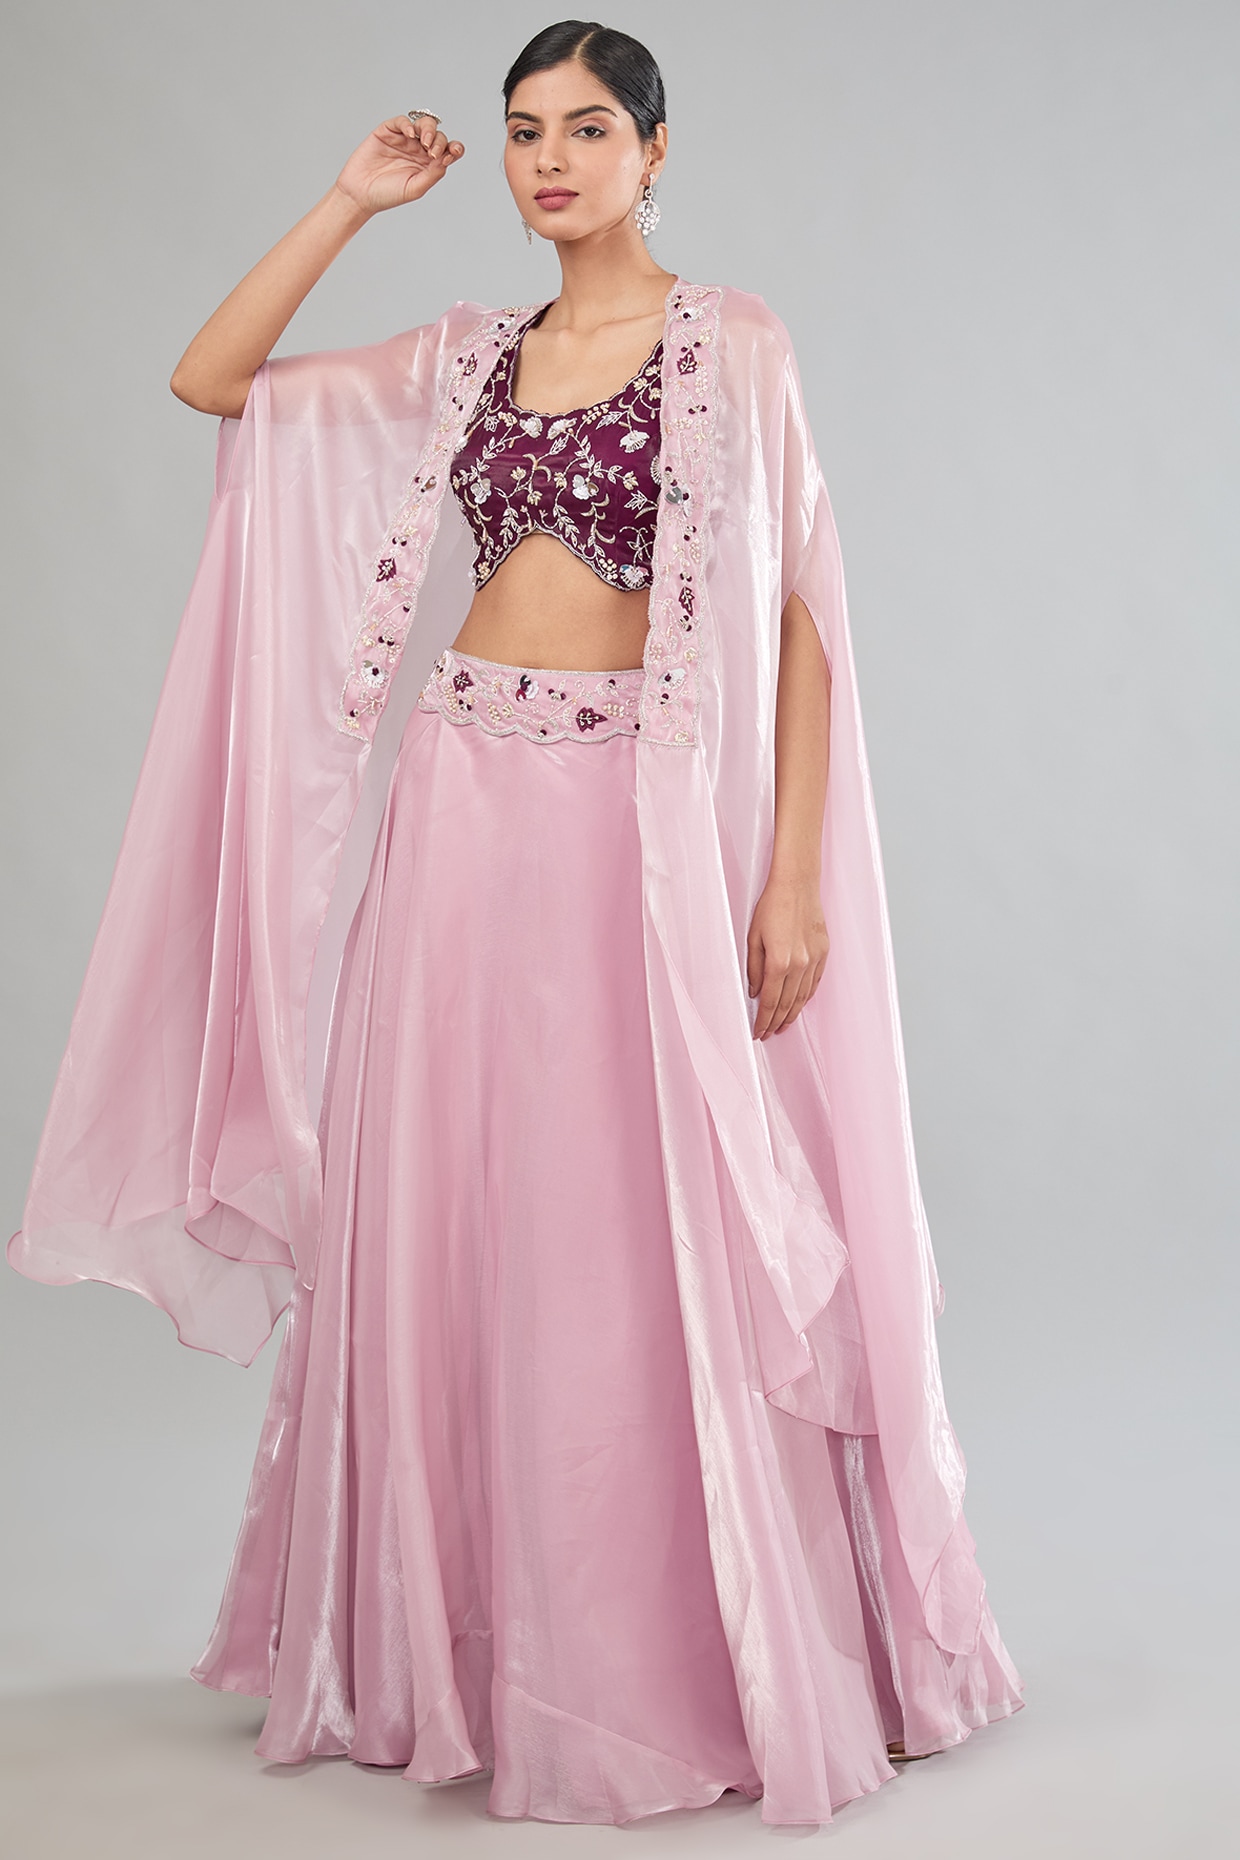 Radha Raman Fashion | Bridal Shop | Jaipur